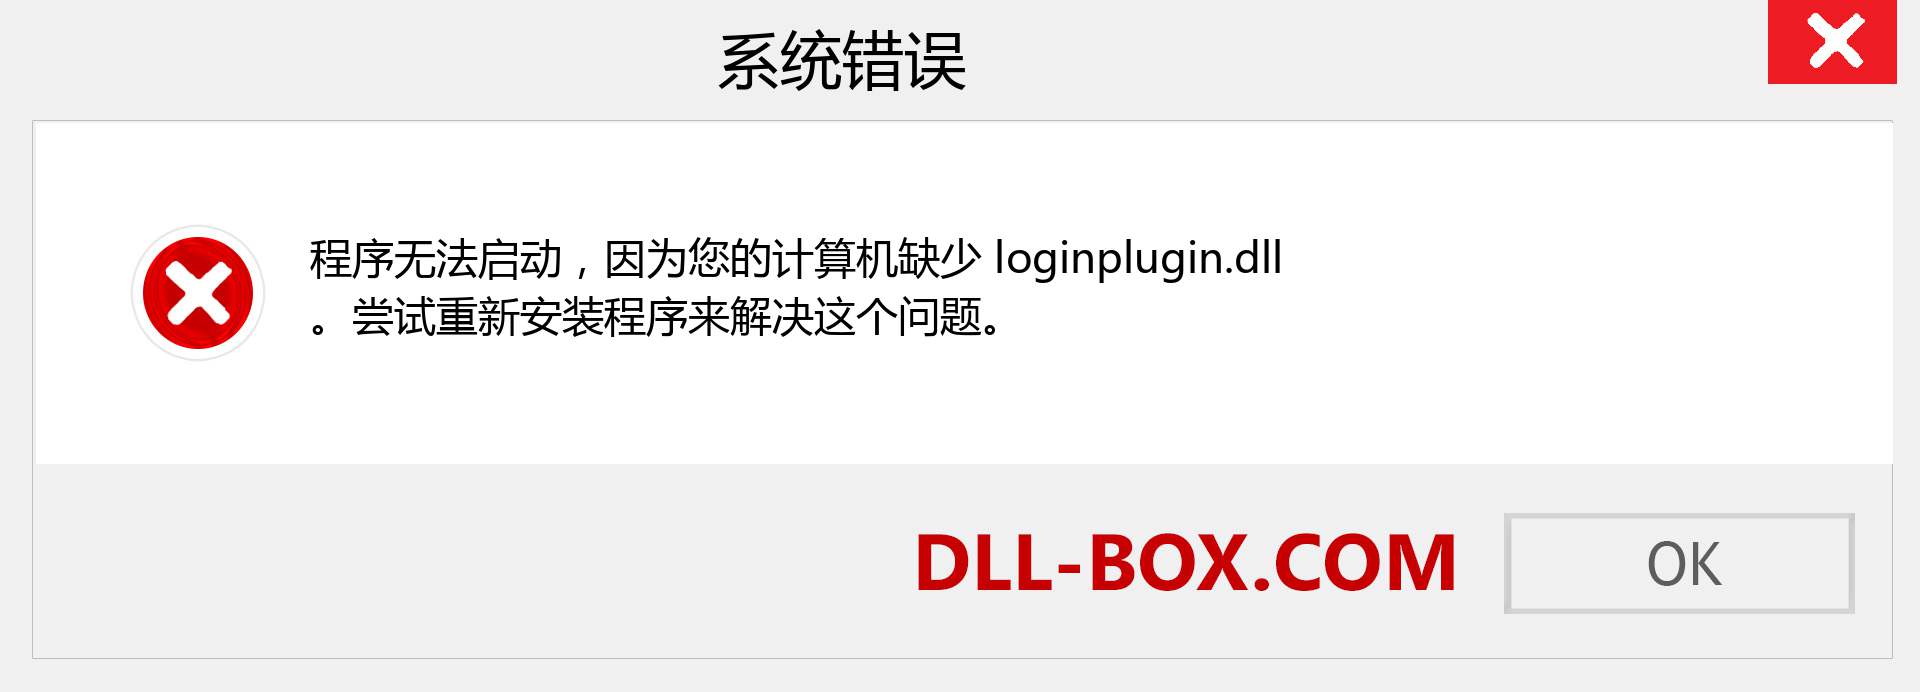 loginplugin.dll 文件丢失？。 适用于 Windows 7、8、10 的下载 - 修复 Windows、照片、图像上的 loginplugin dll 丢失错误